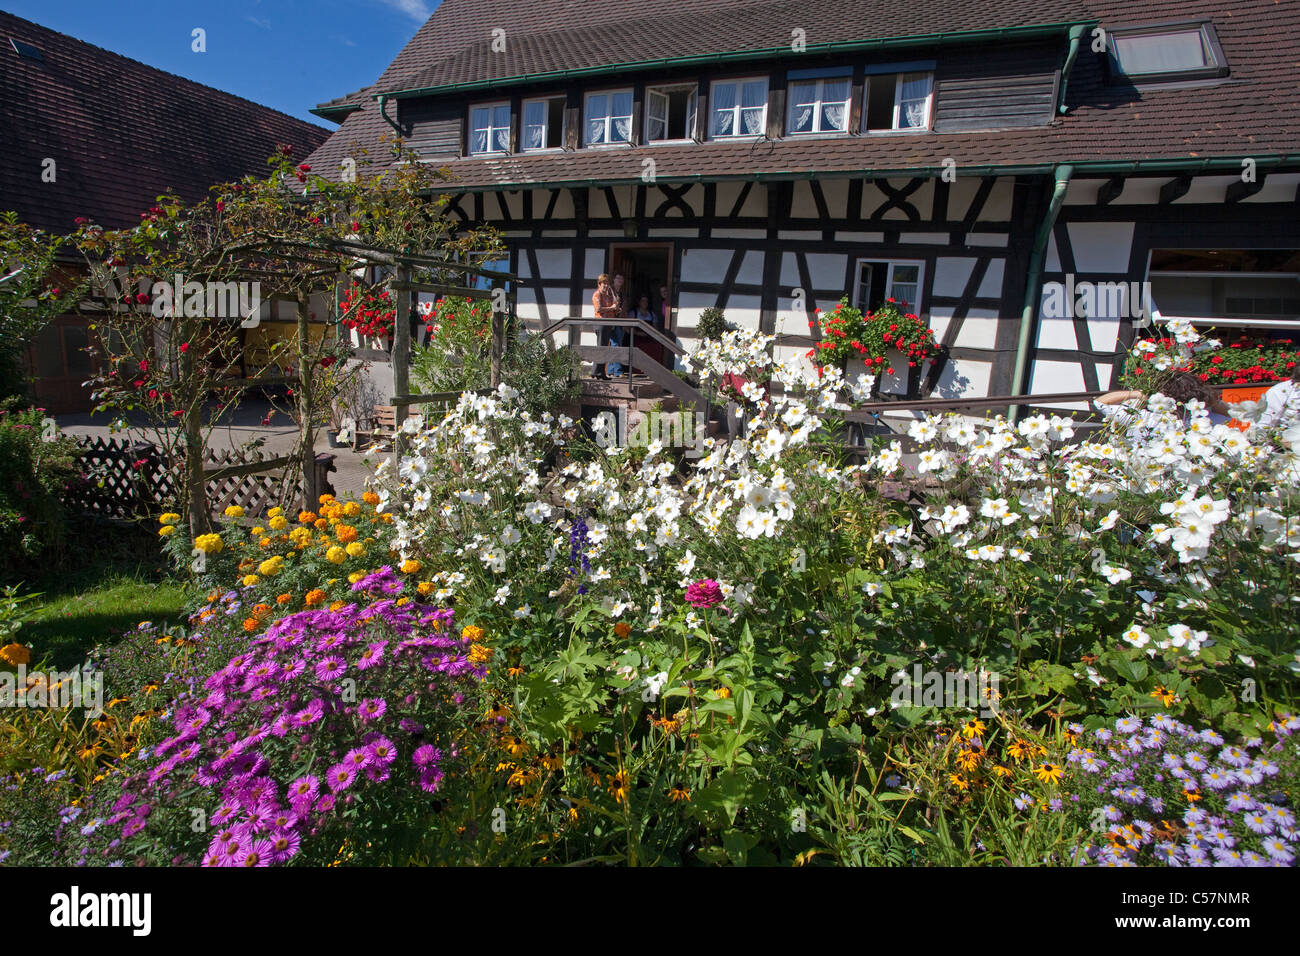 Bauernhaus und Bauerngarten, Blumengarten  in Sasbachwalden, farmer house and flower garden Stock Photo